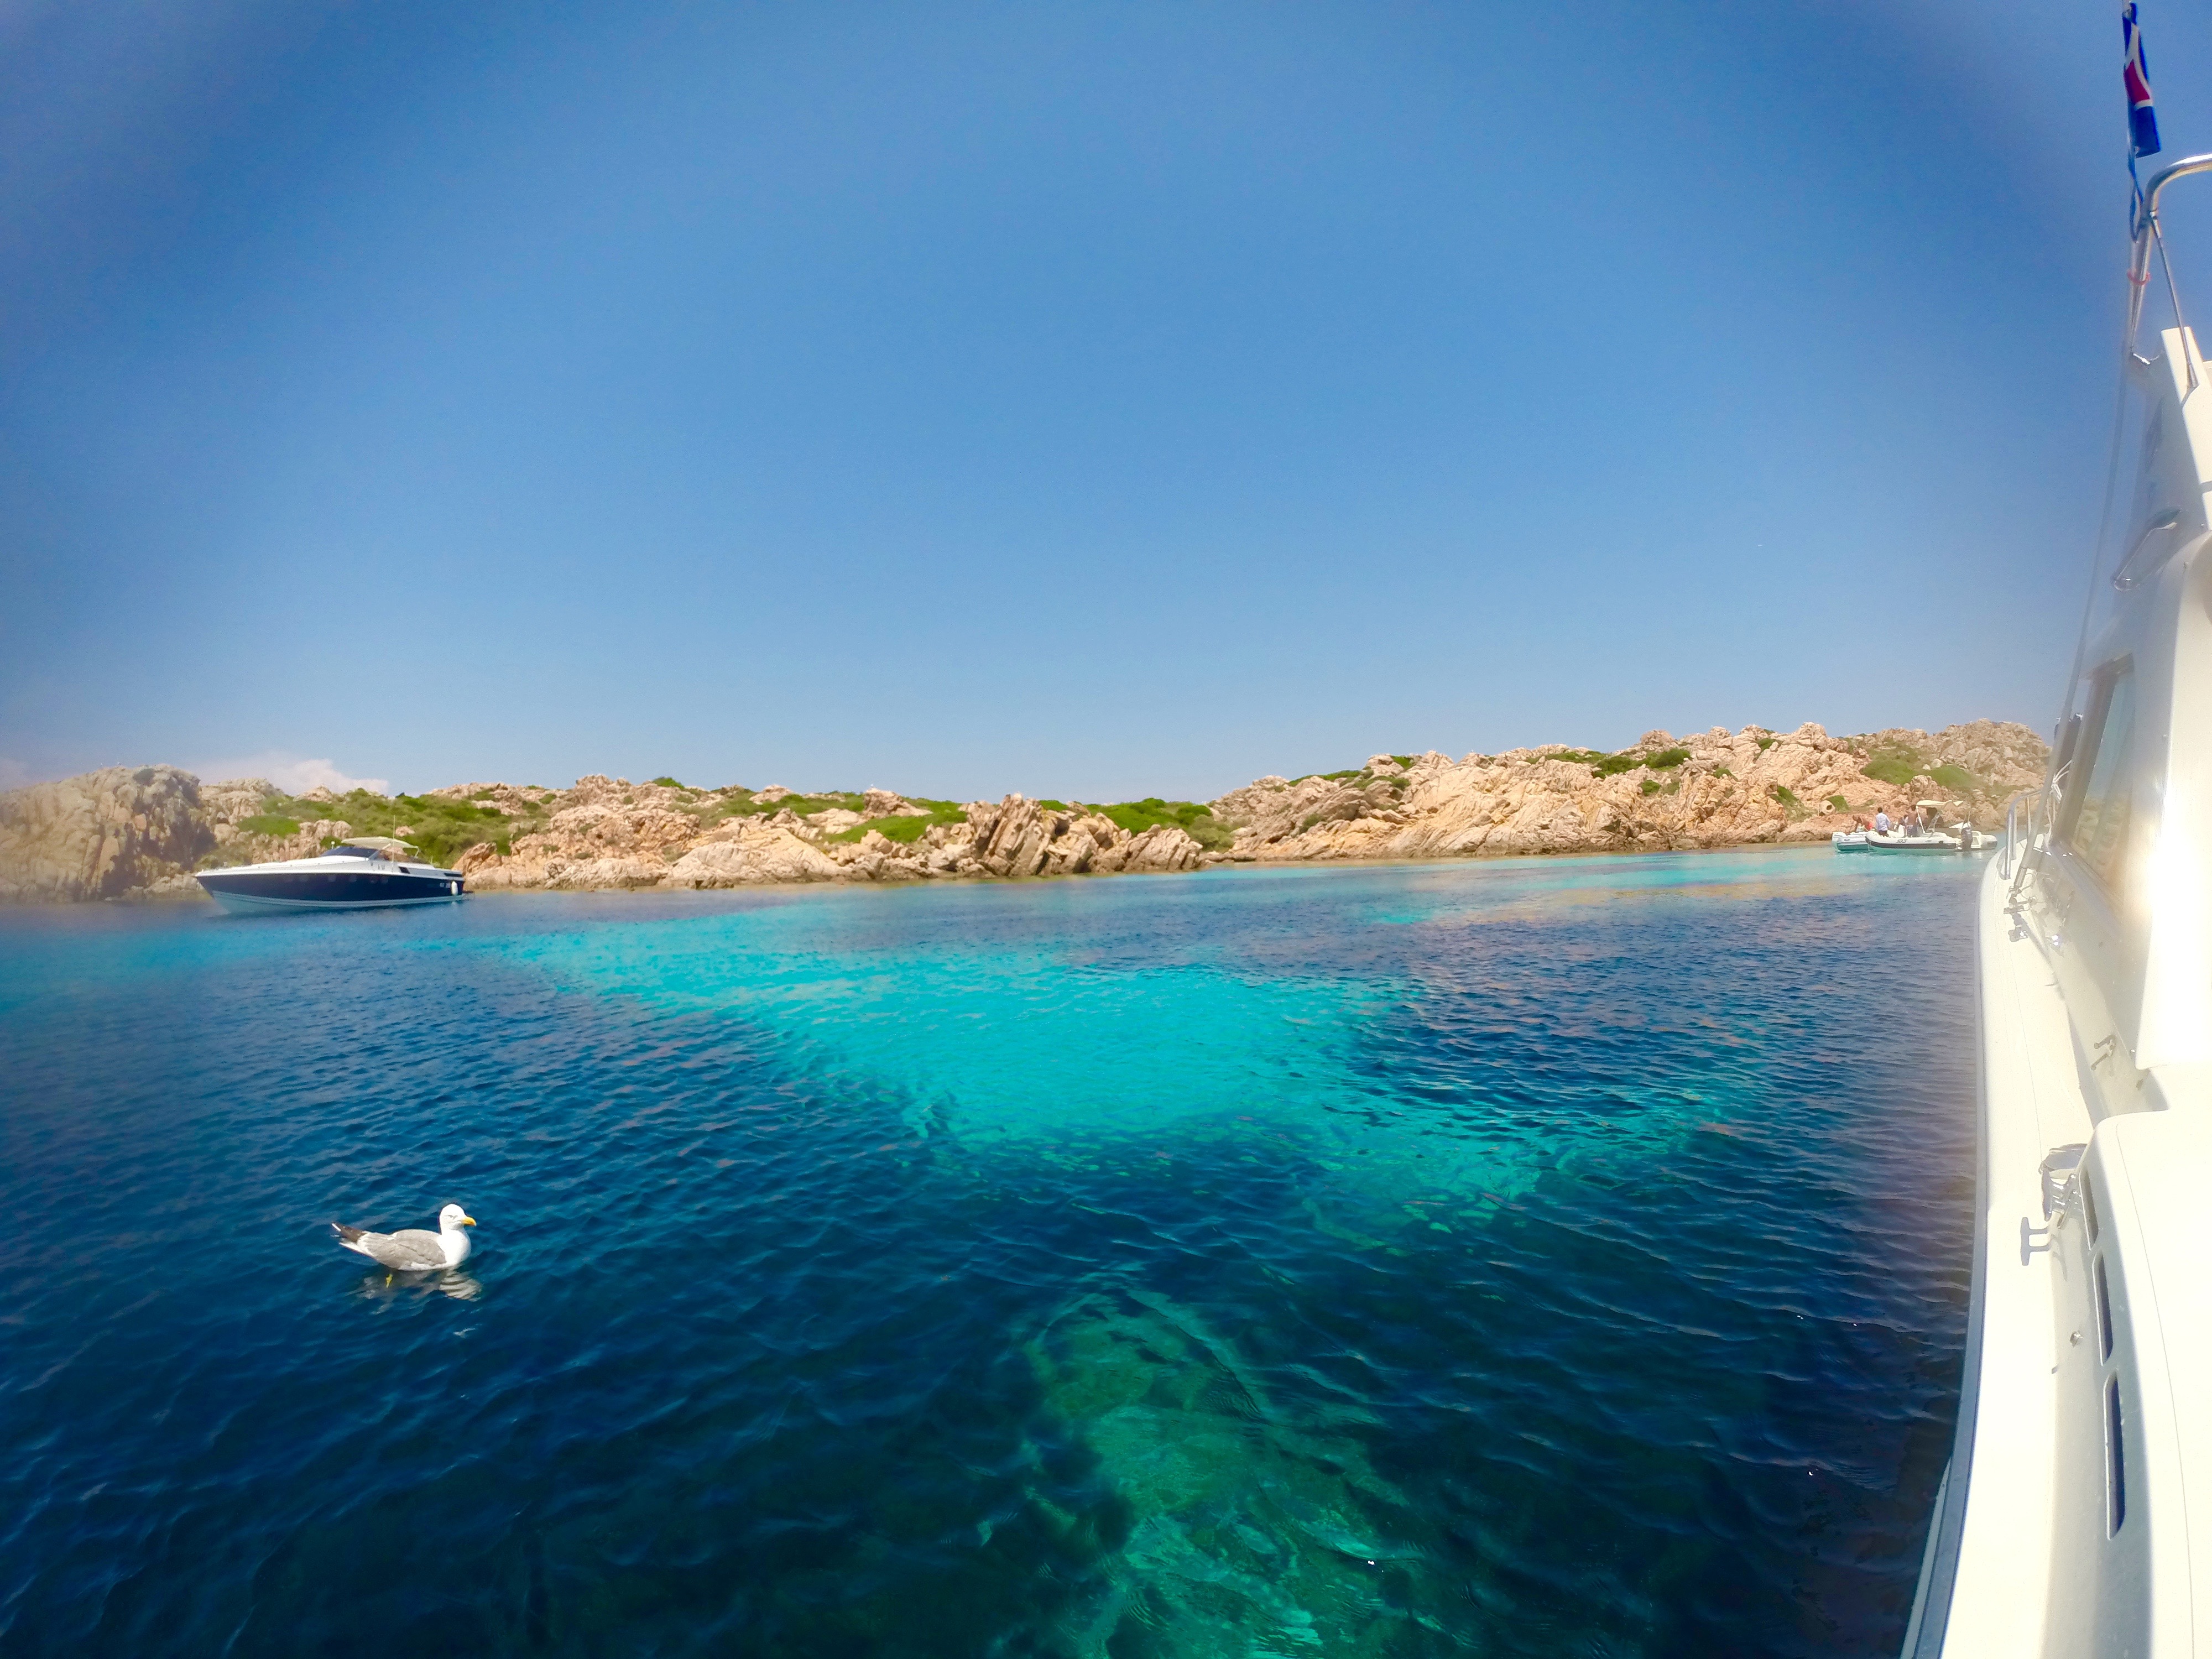 Достопримечательности острова Сардиния: фото и описание